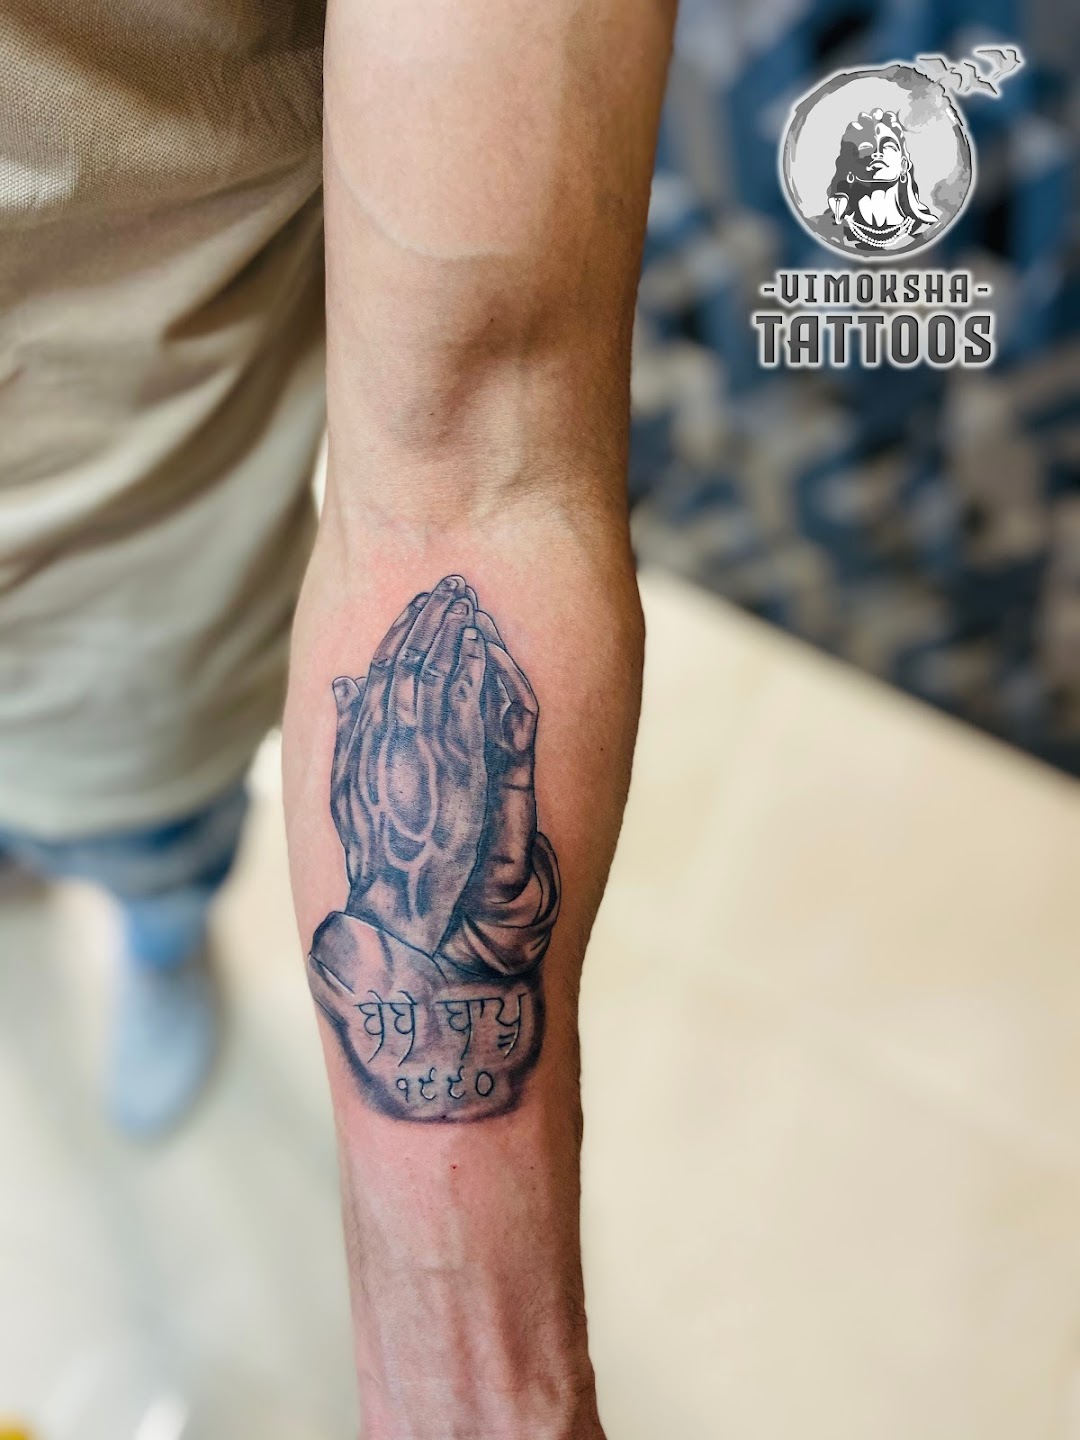 Vimoksha Tattoo - Best Tattoo Artist in Chandigarh | Tattoo Shop